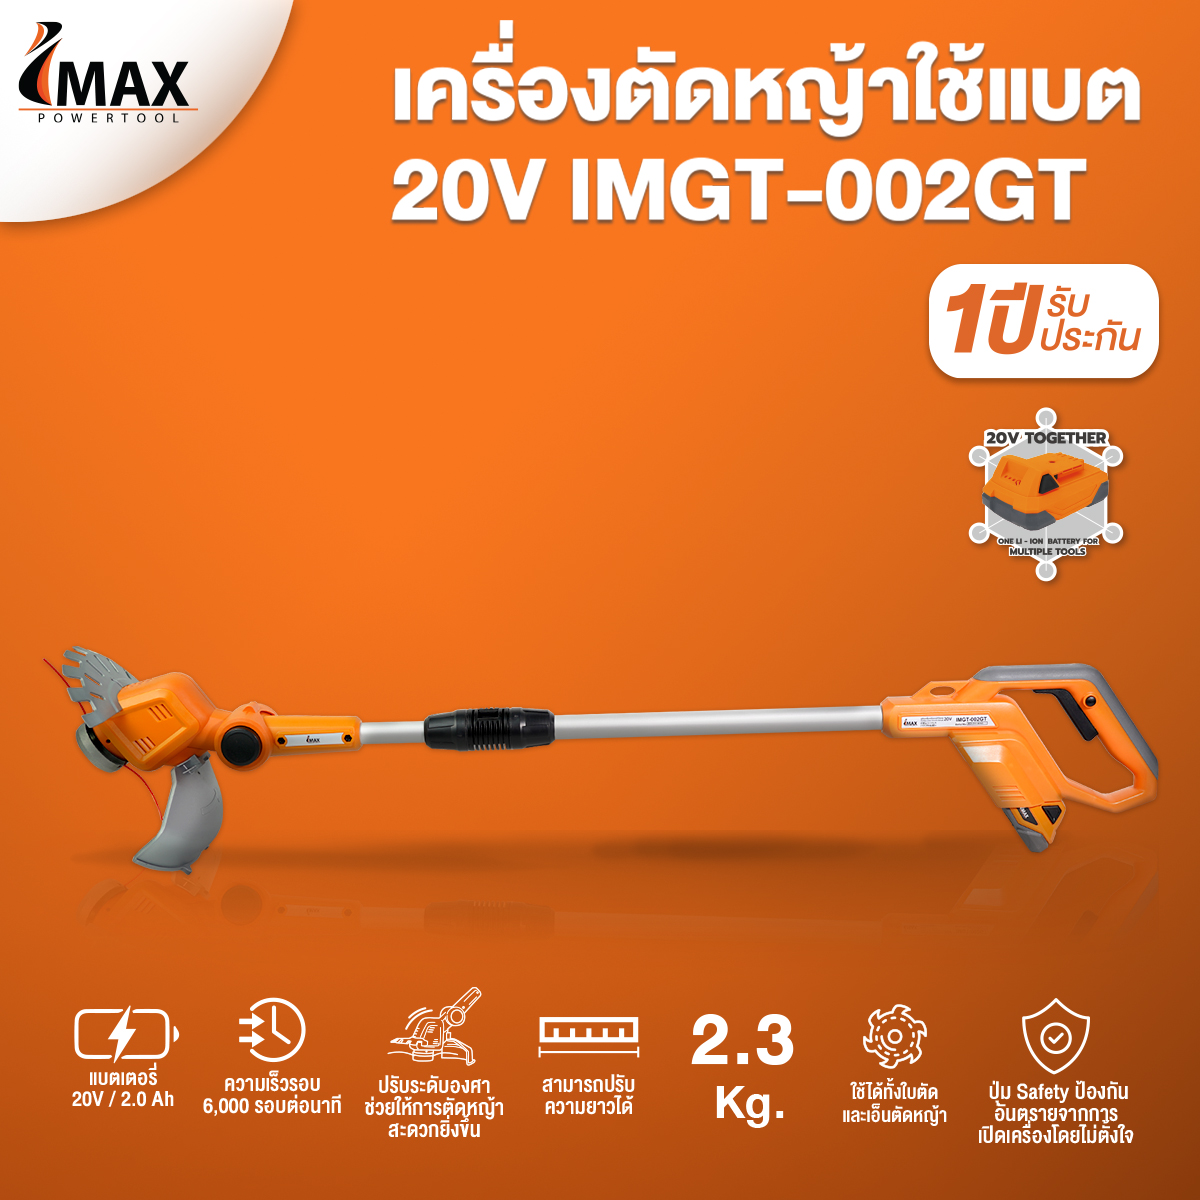 เครื่องตัดหญ้าไร้สาย 20V IMAX IMGT-002GT